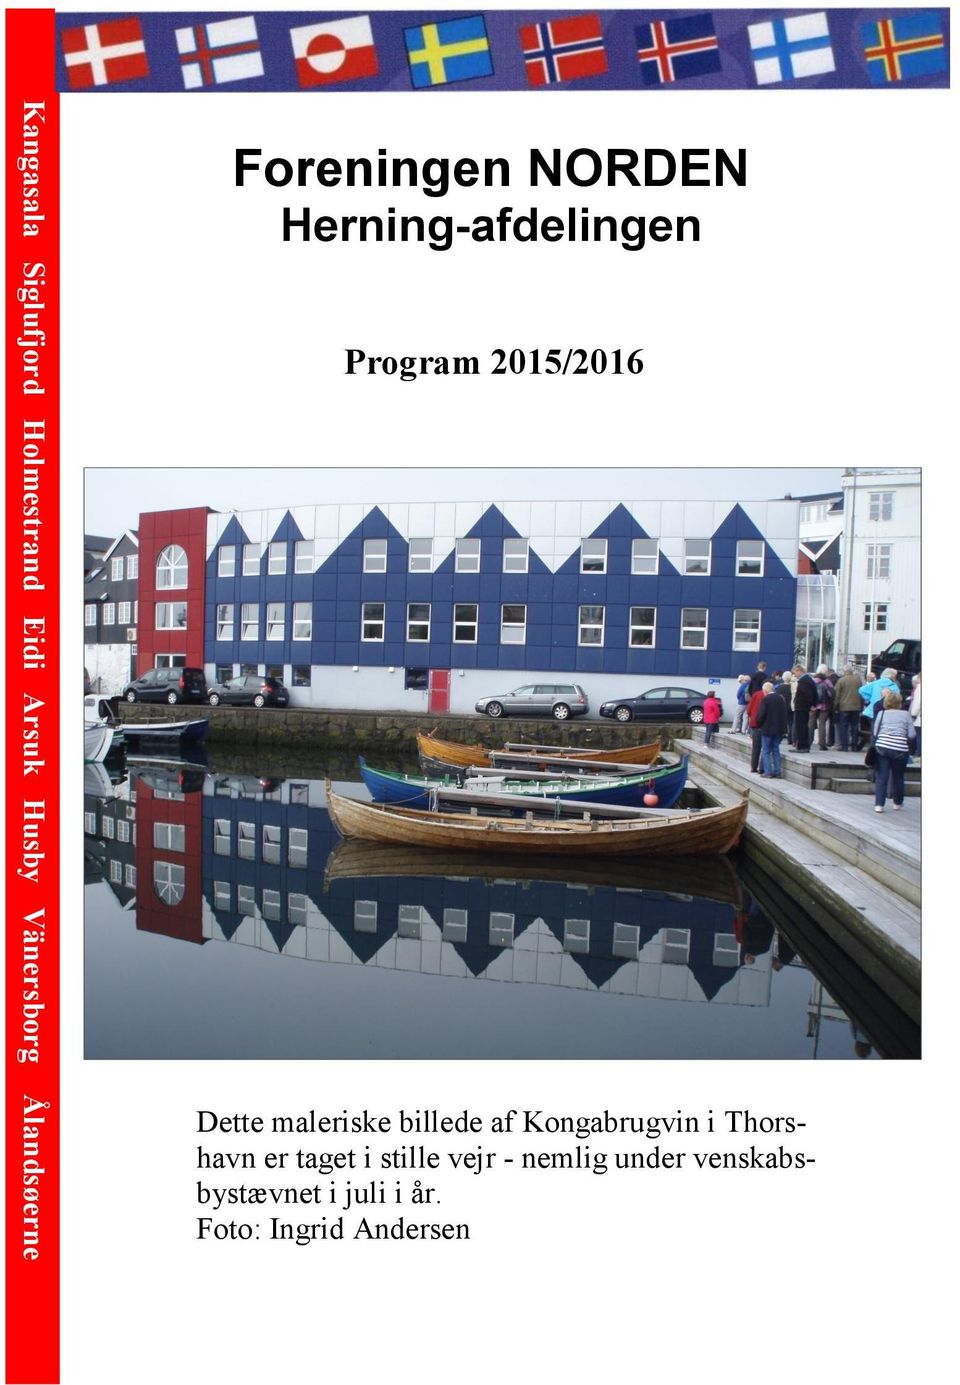 Dette maleriske billede af Kongabrugvin i Thorshavn er taget i